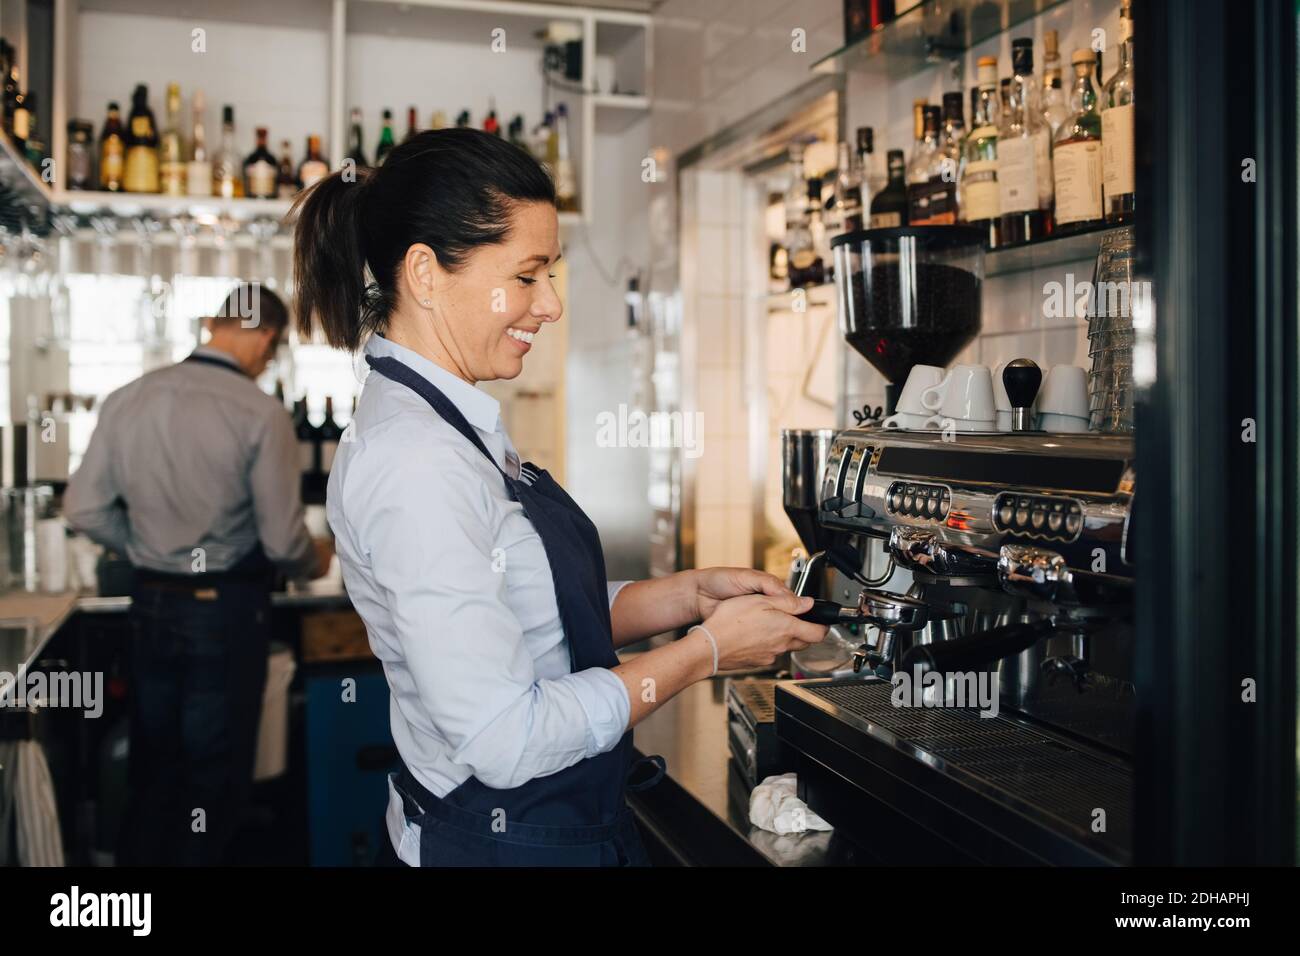 Lächelnder Barista mit Kaffeemaschine im Restaurant Stockfoto